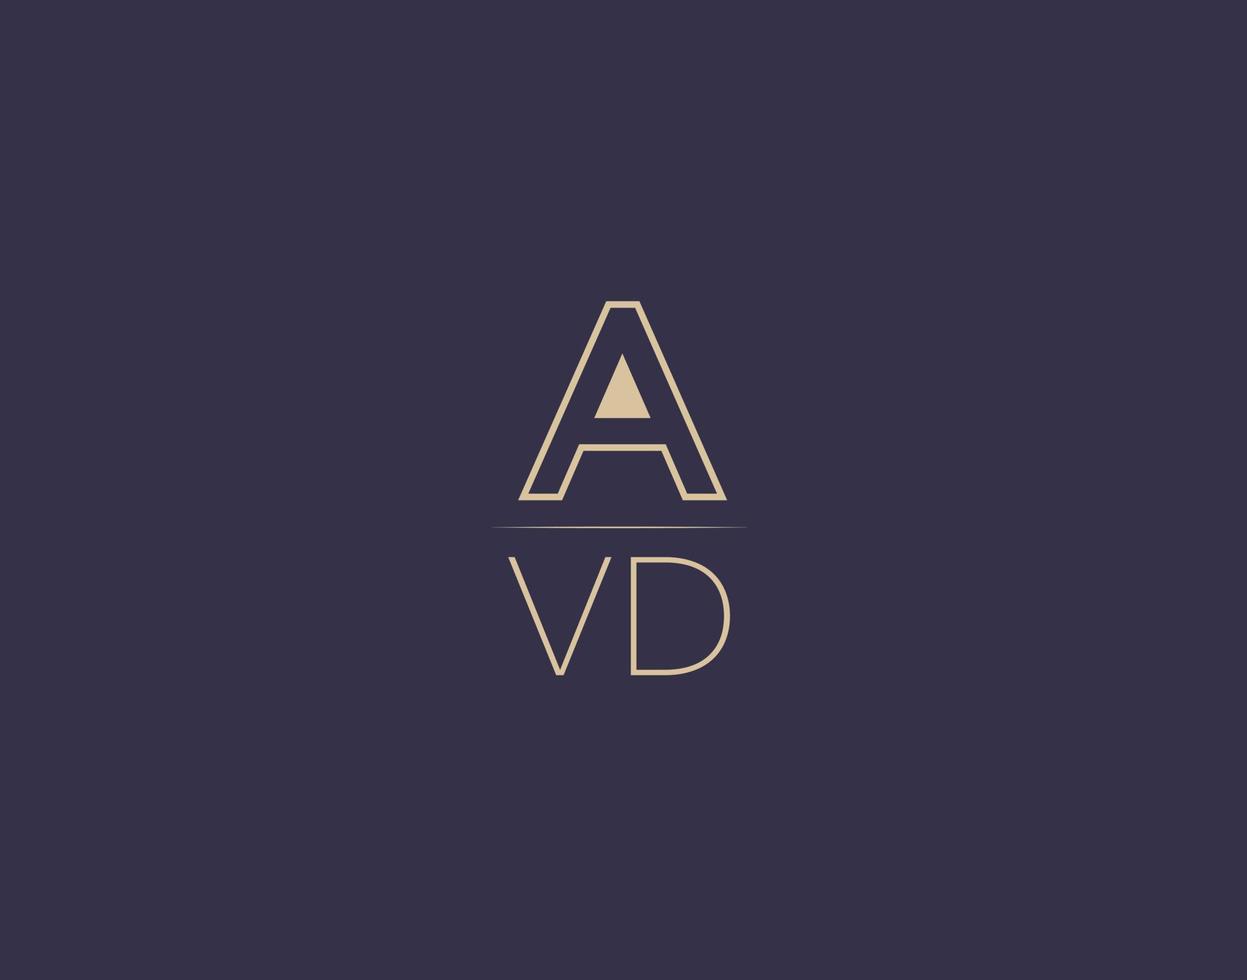 AVD letter logo design modern minimalist vector images